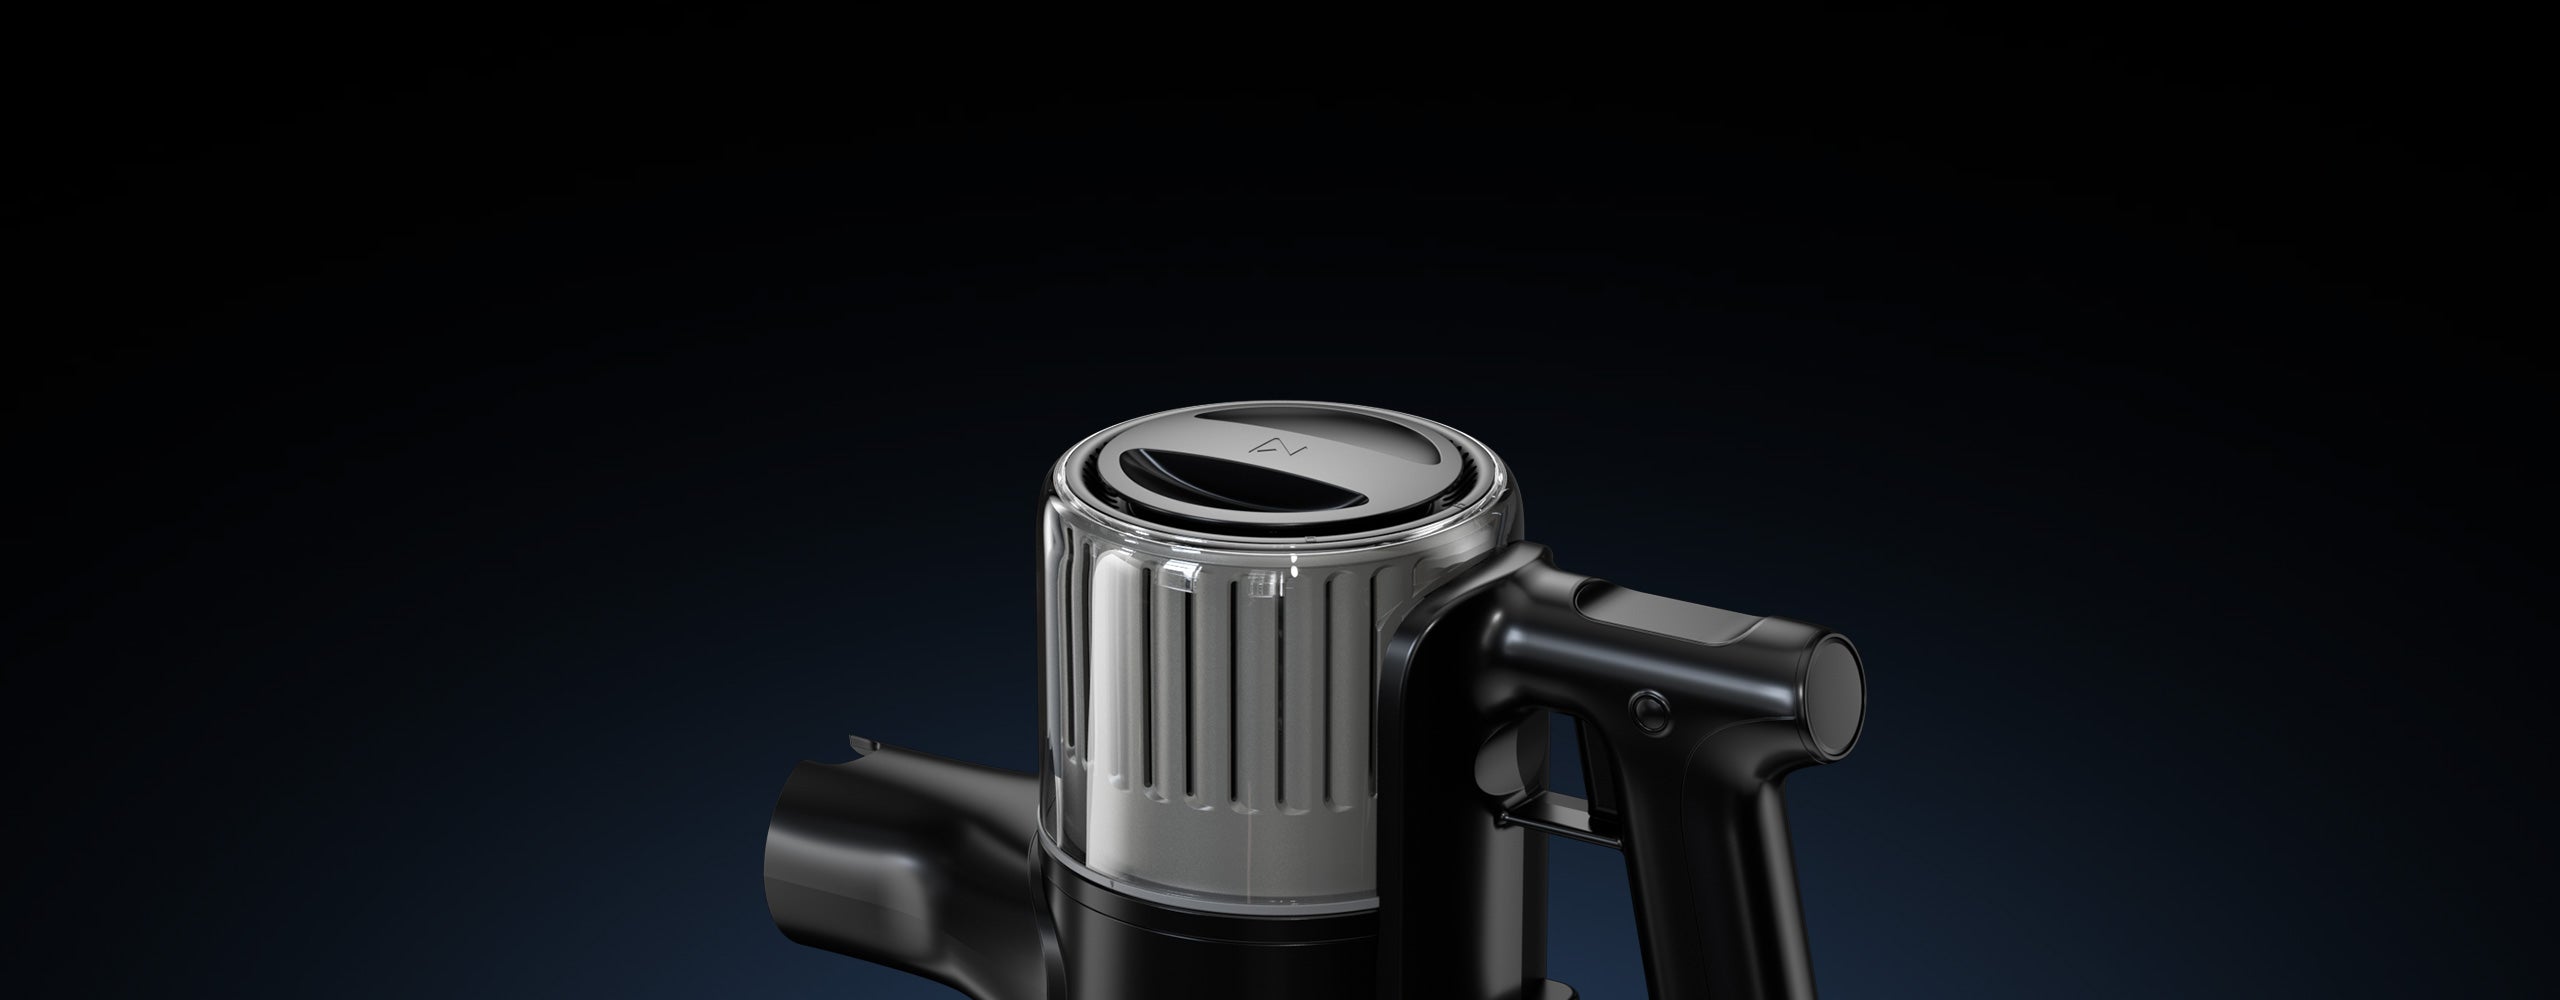 Roborock H6 minimiza el ruido gracias a su cámara amortiguadora, el control avanzado del flujo de aire y el filtro trasero